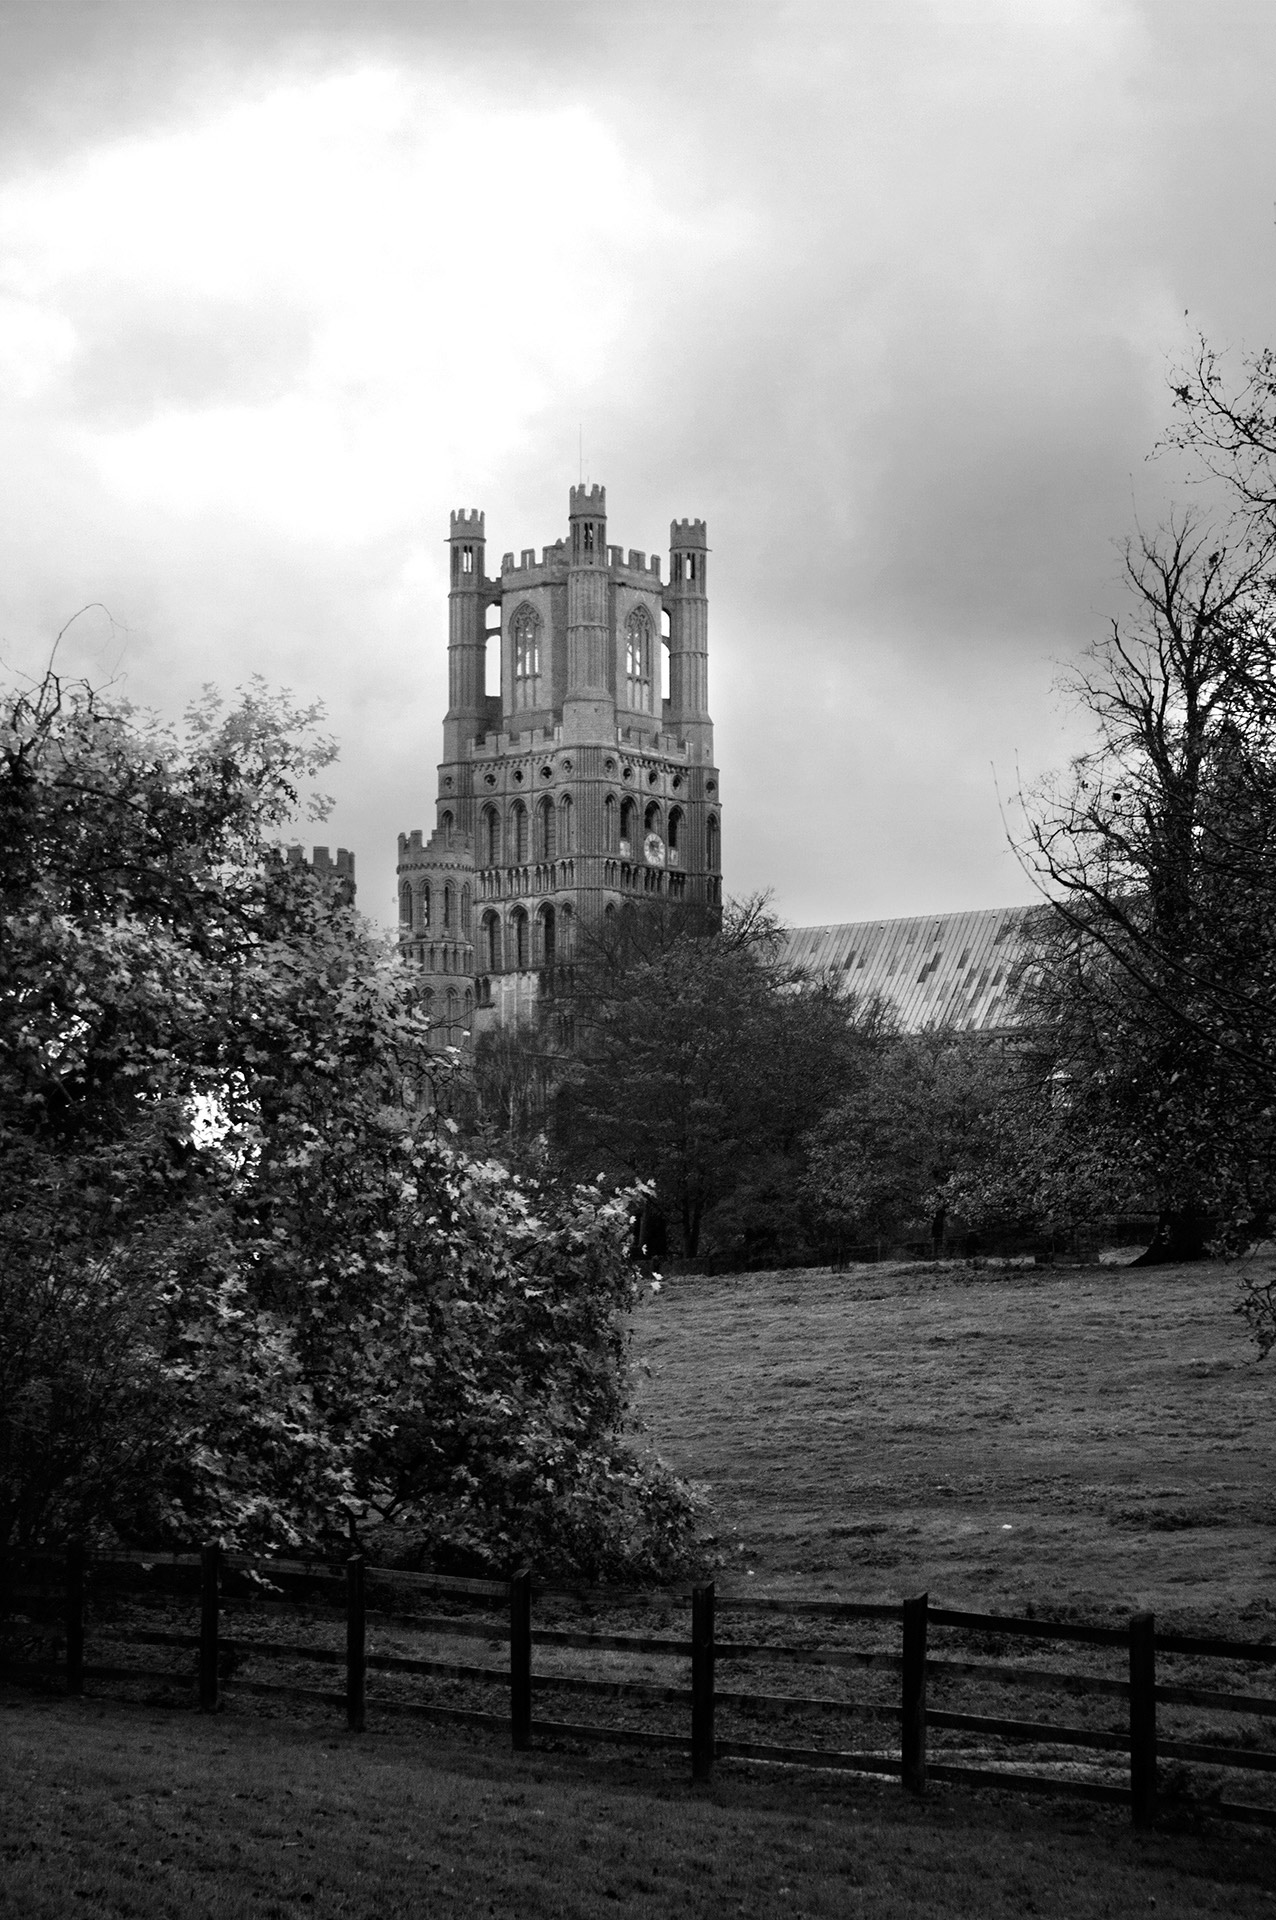 architektura średniowiczna, gotyk, katedra w Ely, gotyk angielski, Londyn, podróże, podróże po Europie, fotografia Monika Turska